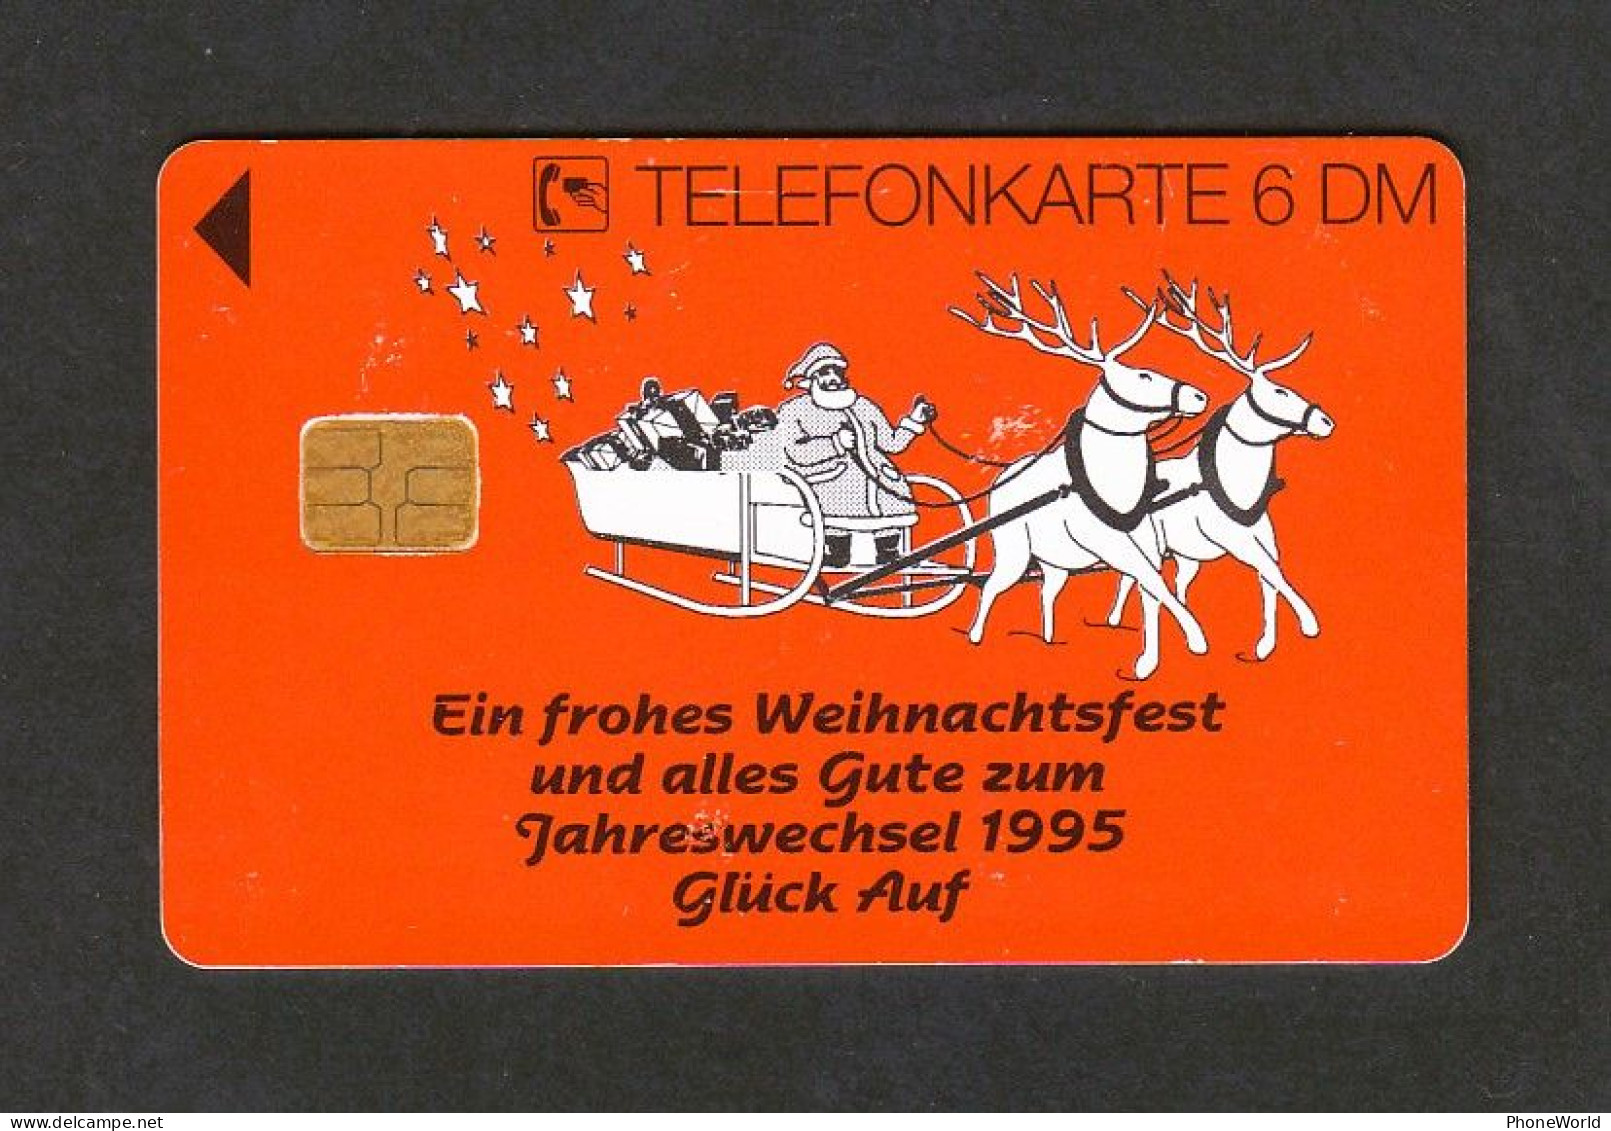 Deutsche, Fröhliche Weihnachten Reinbraun, O2739 12.94 Only 1100ex, Christmas & Santa - O-Series: Kundenserie Vom Sammlerservice Ausgeschlossen